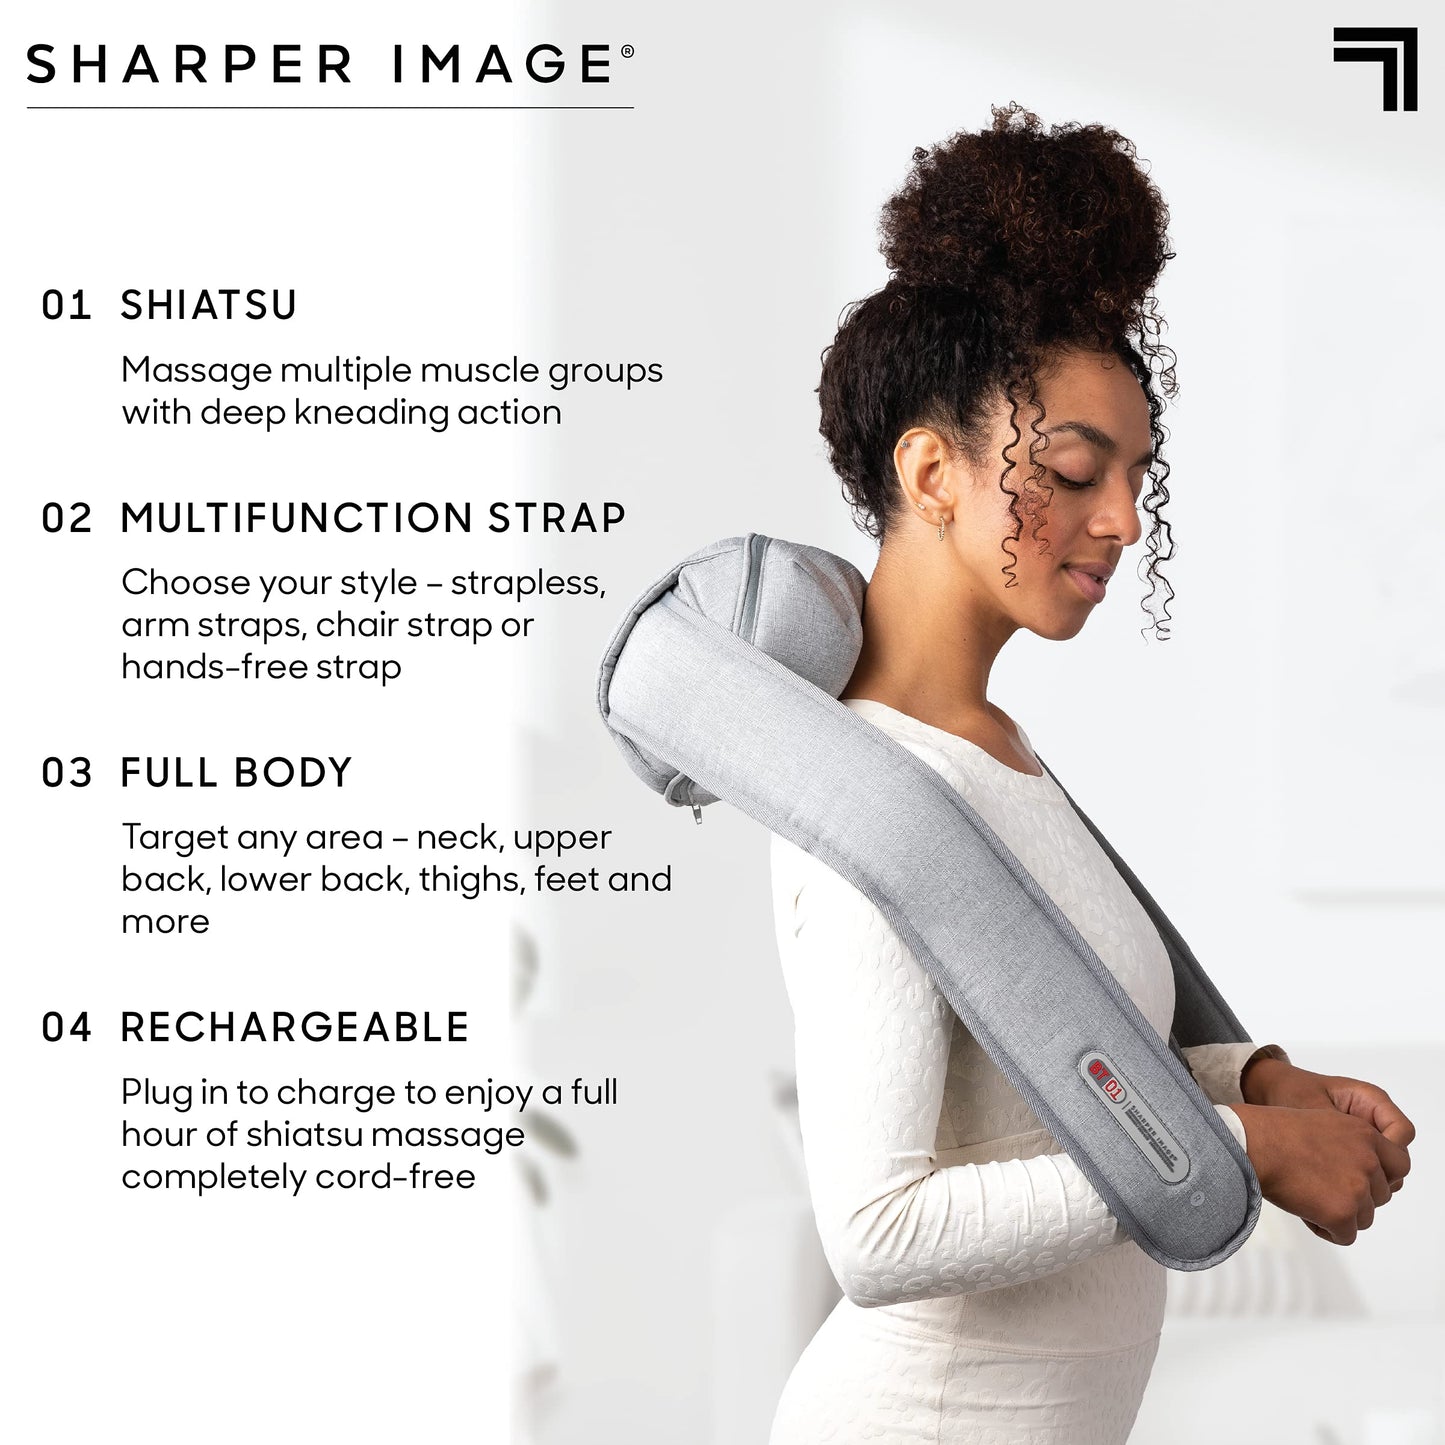 Sharper Image Multi-Function Full Body Cordless Massager